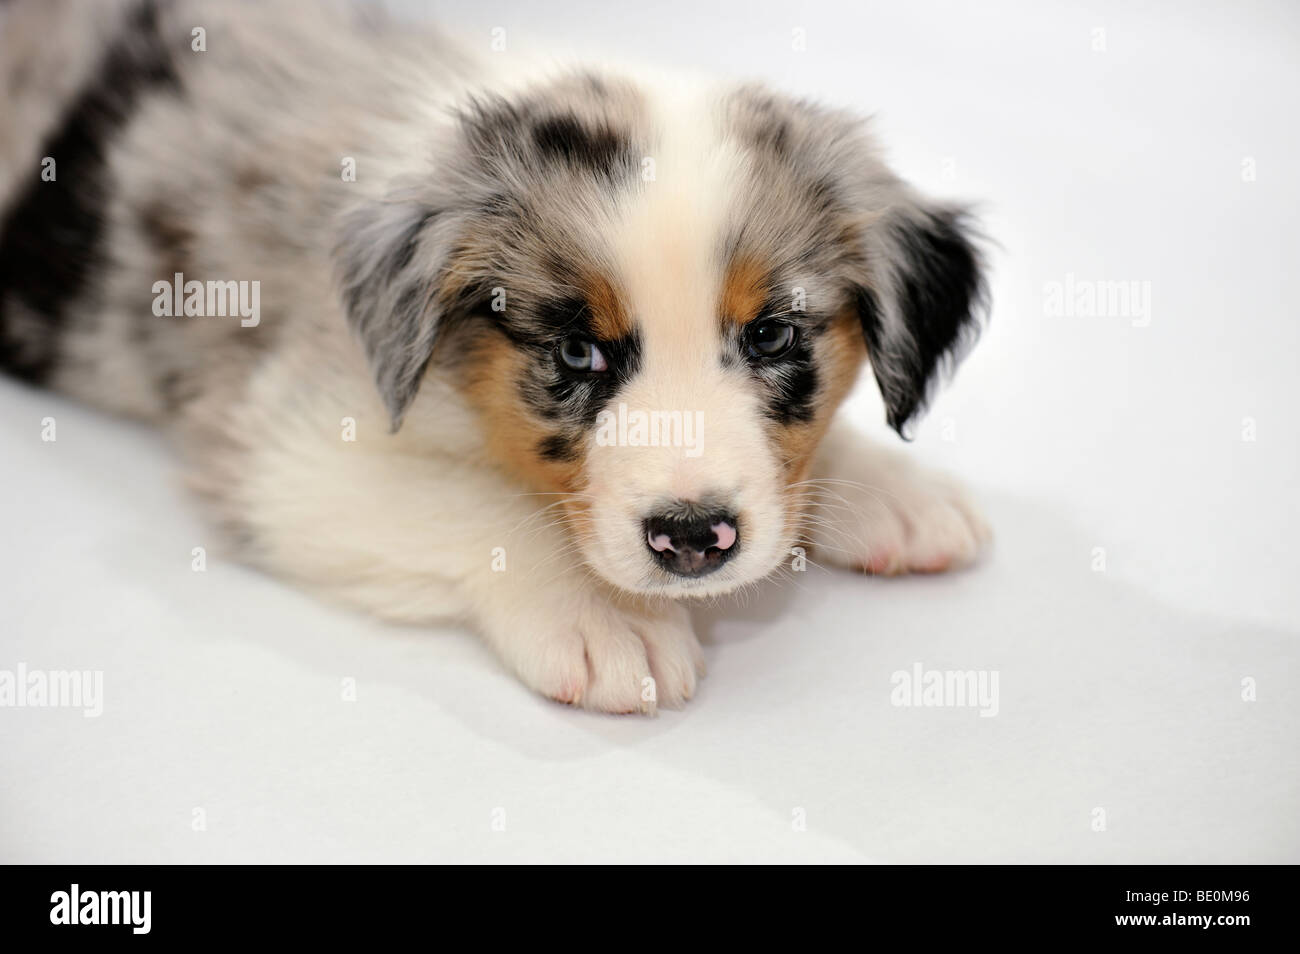 scheerapparaat ik klaag hoofdstuk 7 week old puppy hi-res stock photography and images - Alamy